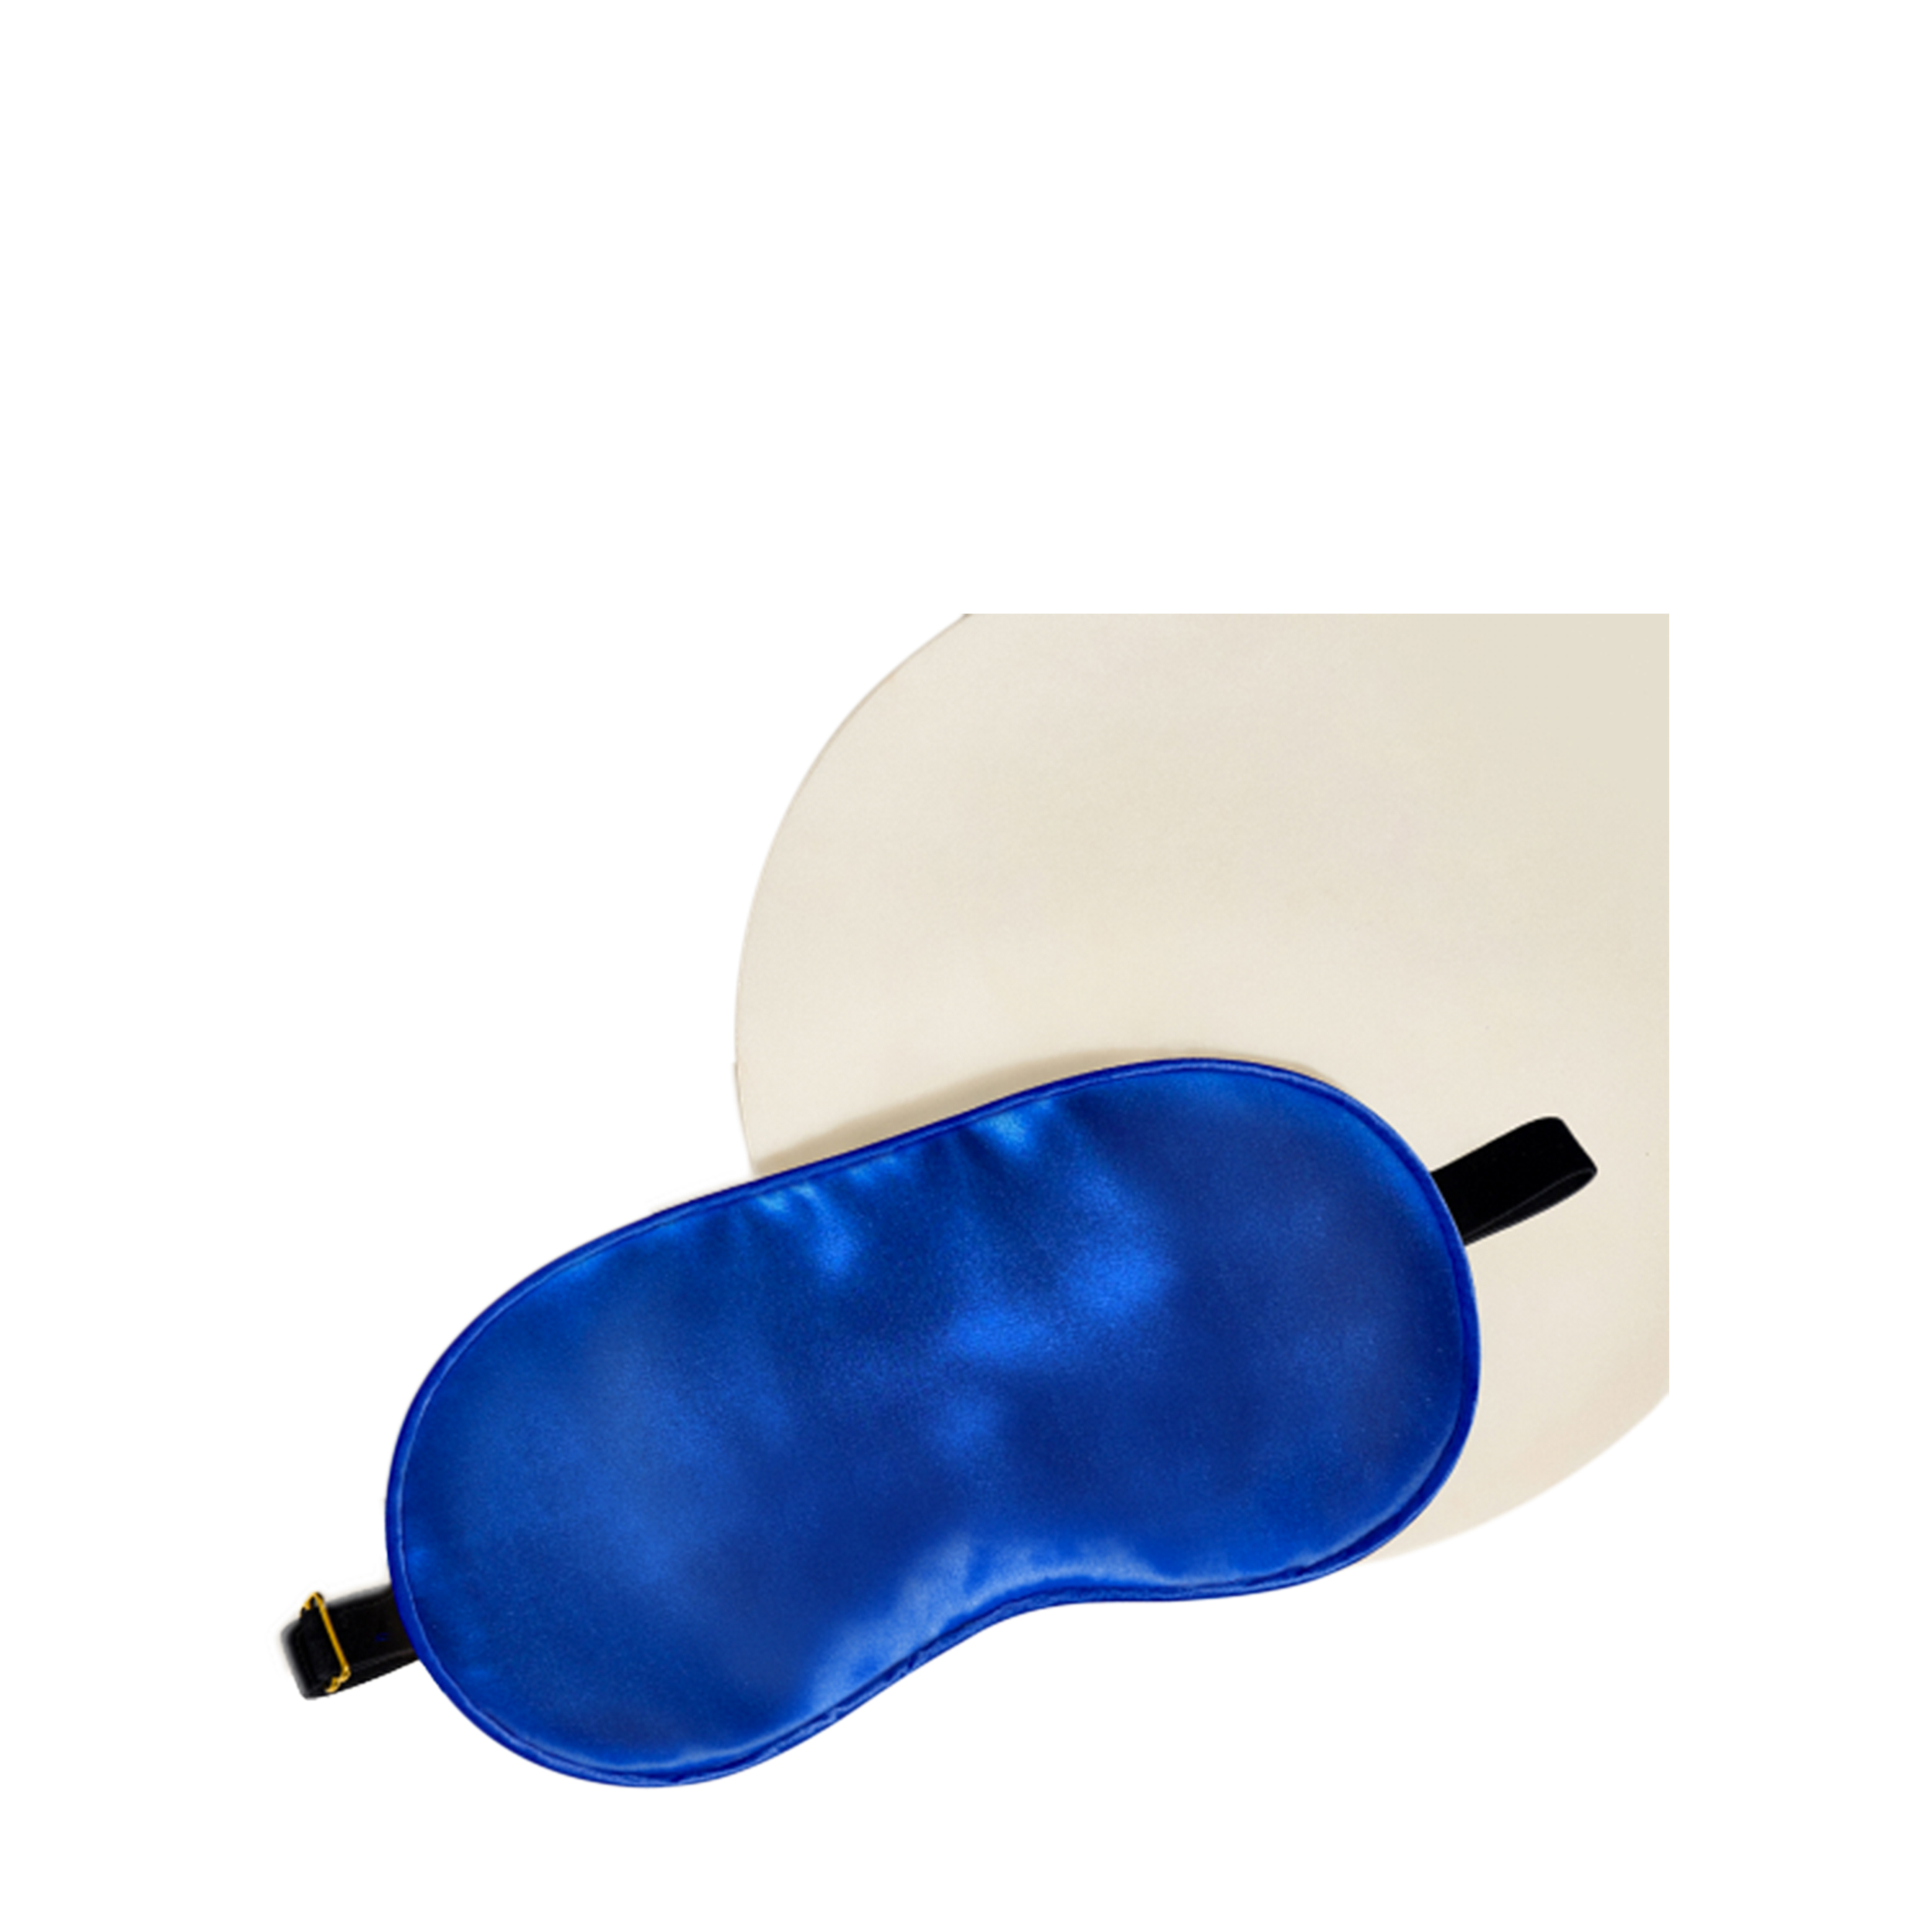 AYRIS SILK AYRIS SILK Маска для сна Ayris Silk из натурального шёлка, арт. 5001, Королевский синий 5001blue - фото 1